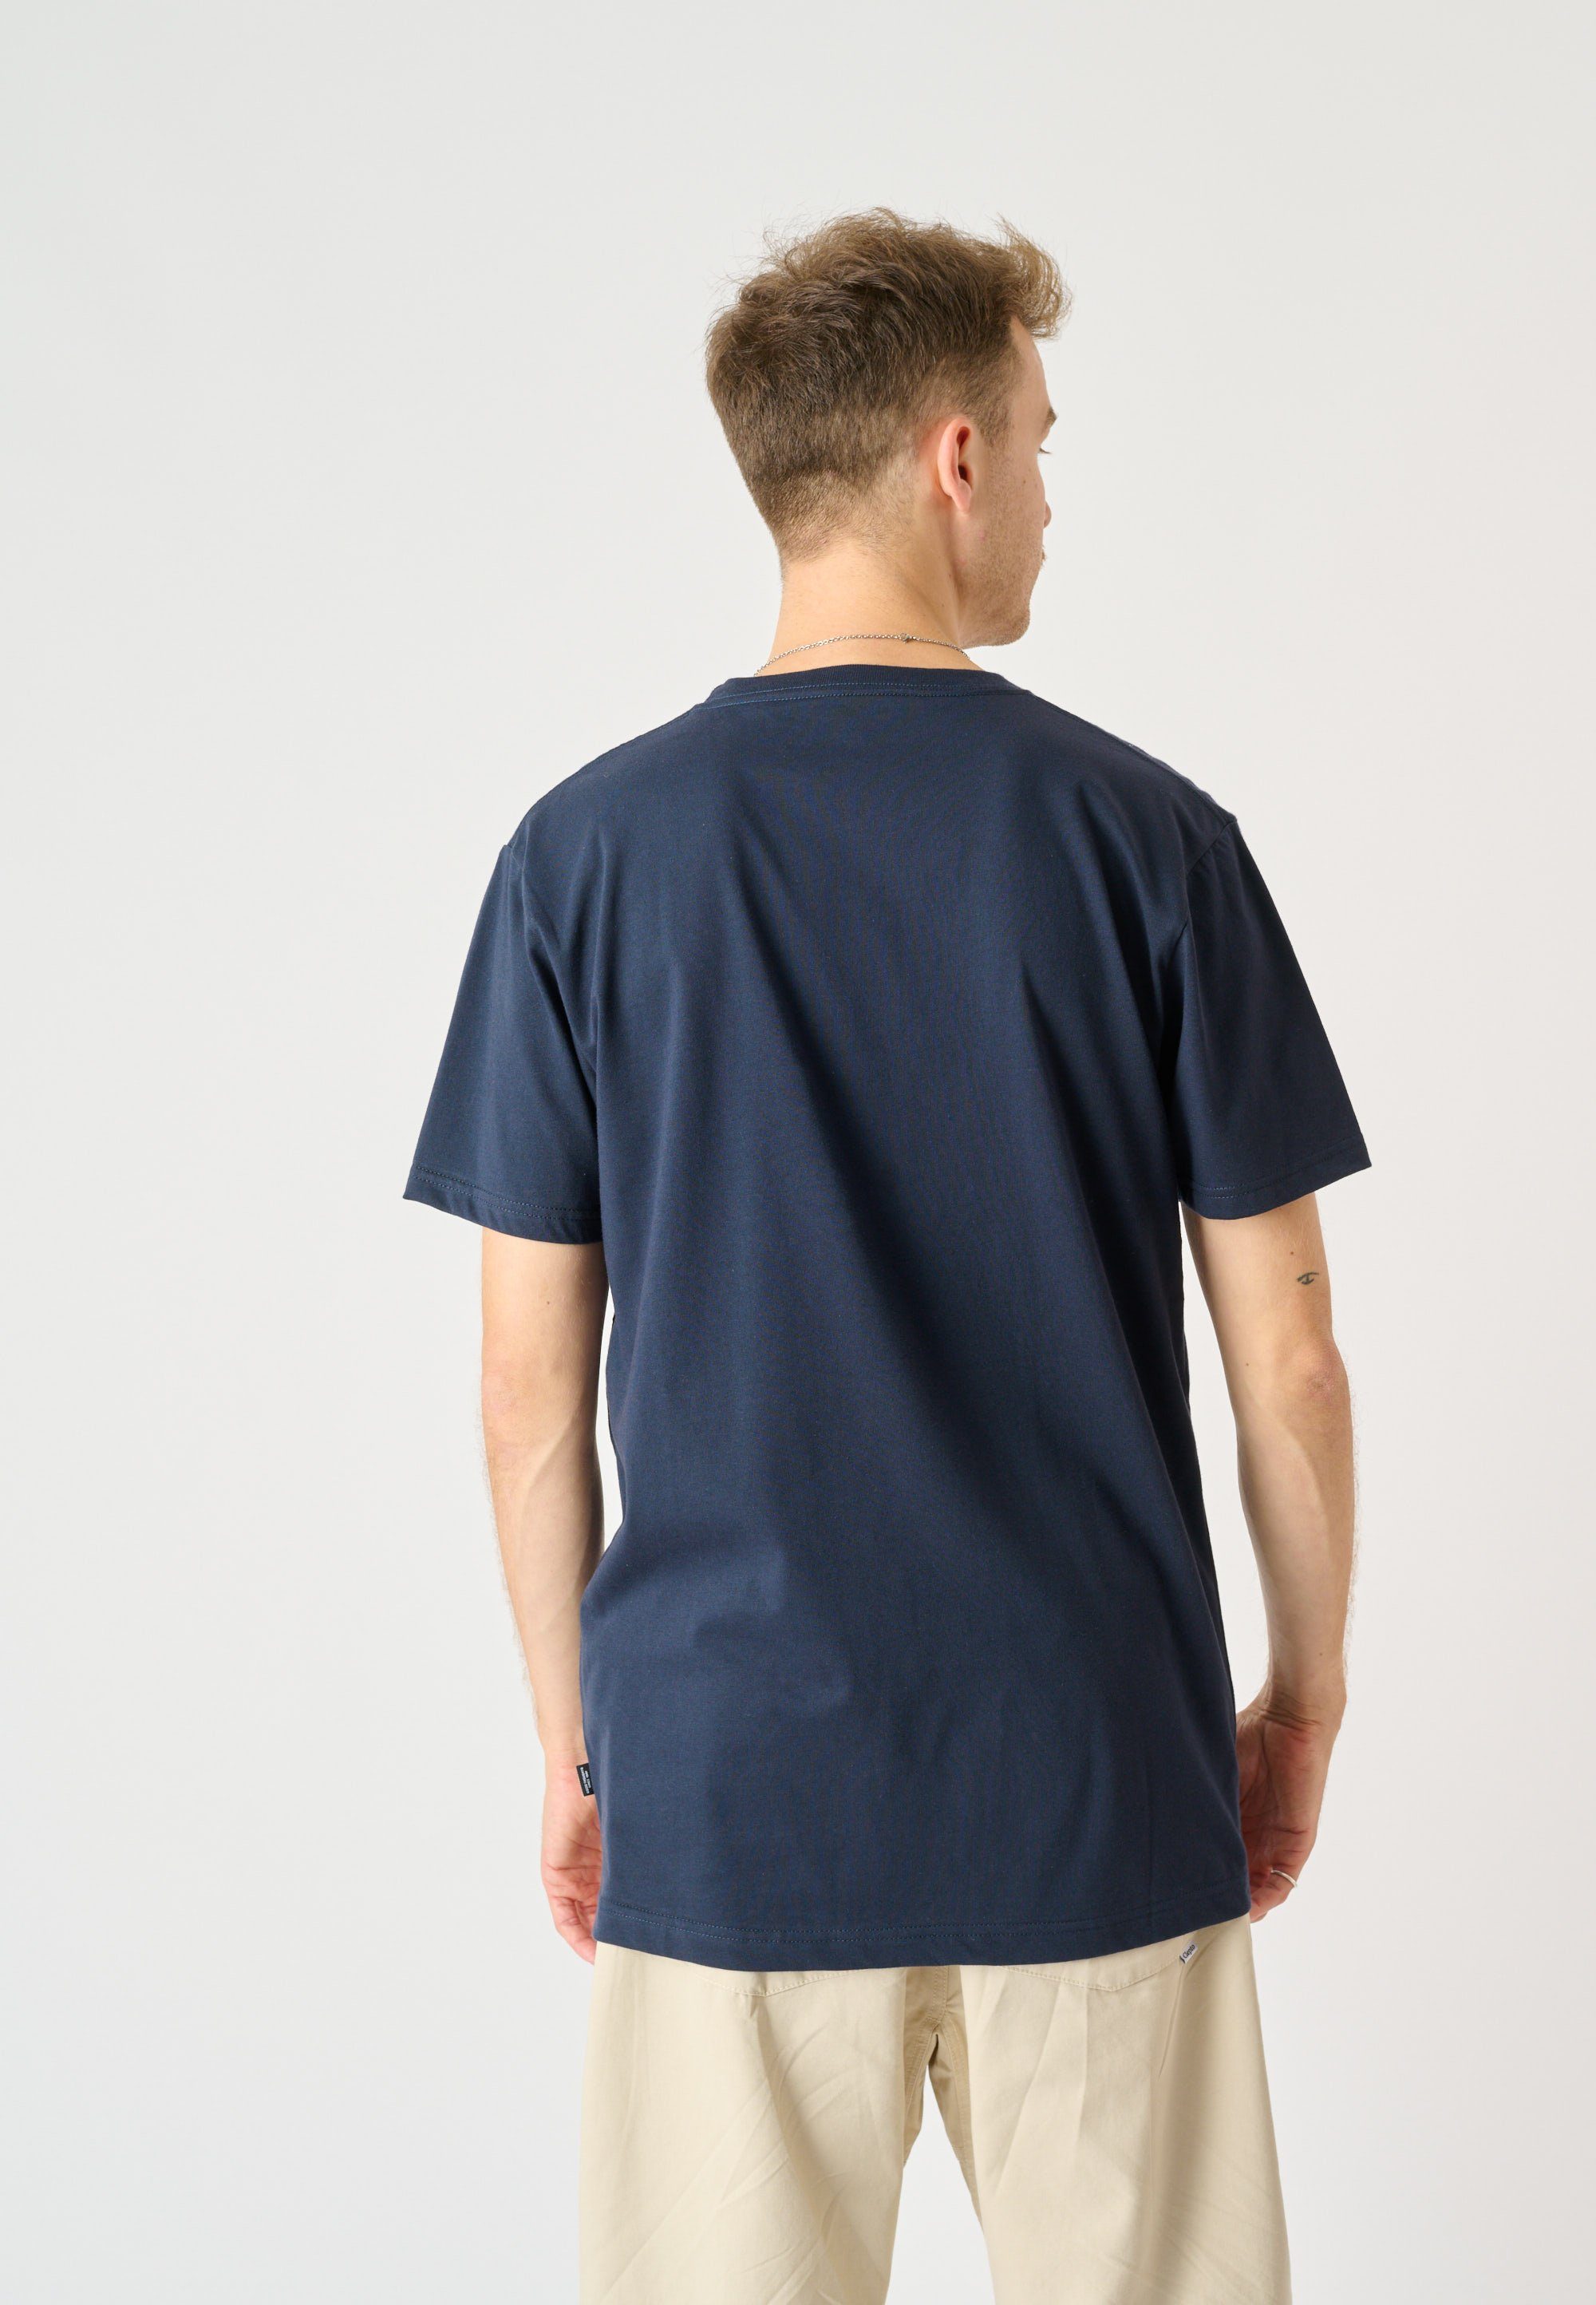 Pufflines Cleptomanicx trendigem mit T-Shirt Frontprint Möwe